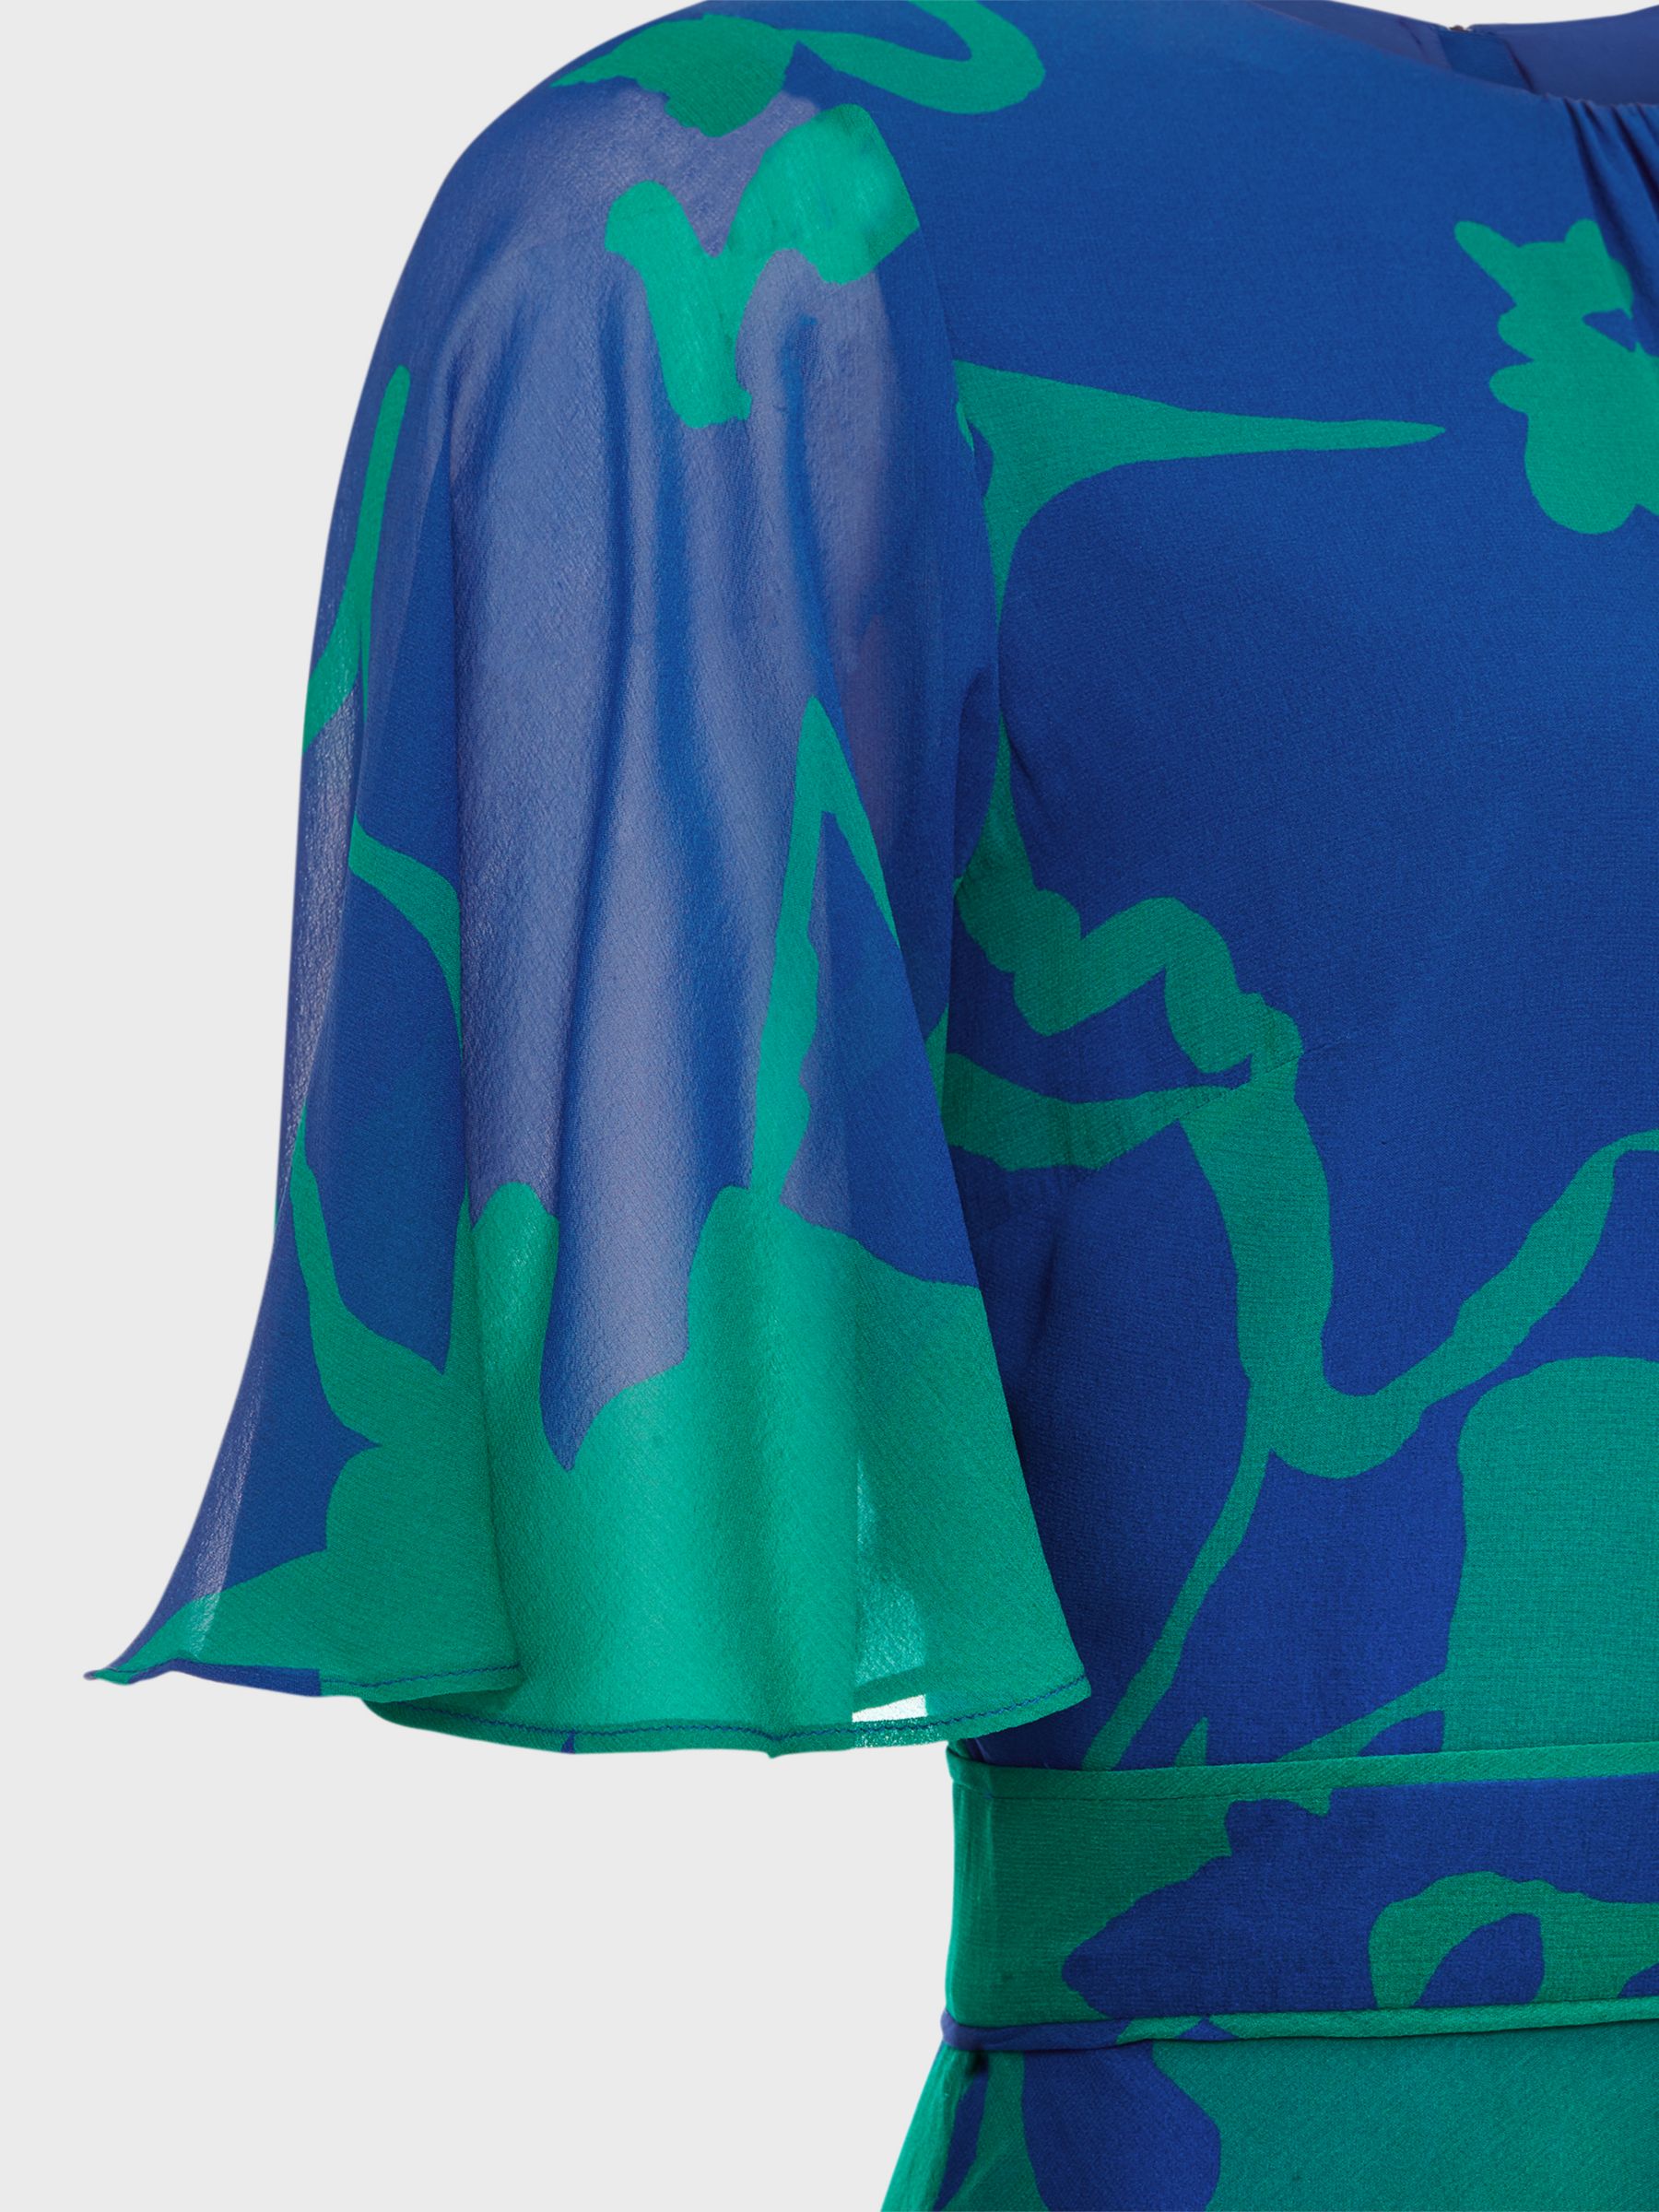 Hobbs Freya Abstract Print Silk Maxi Dress, Blue Green, 6